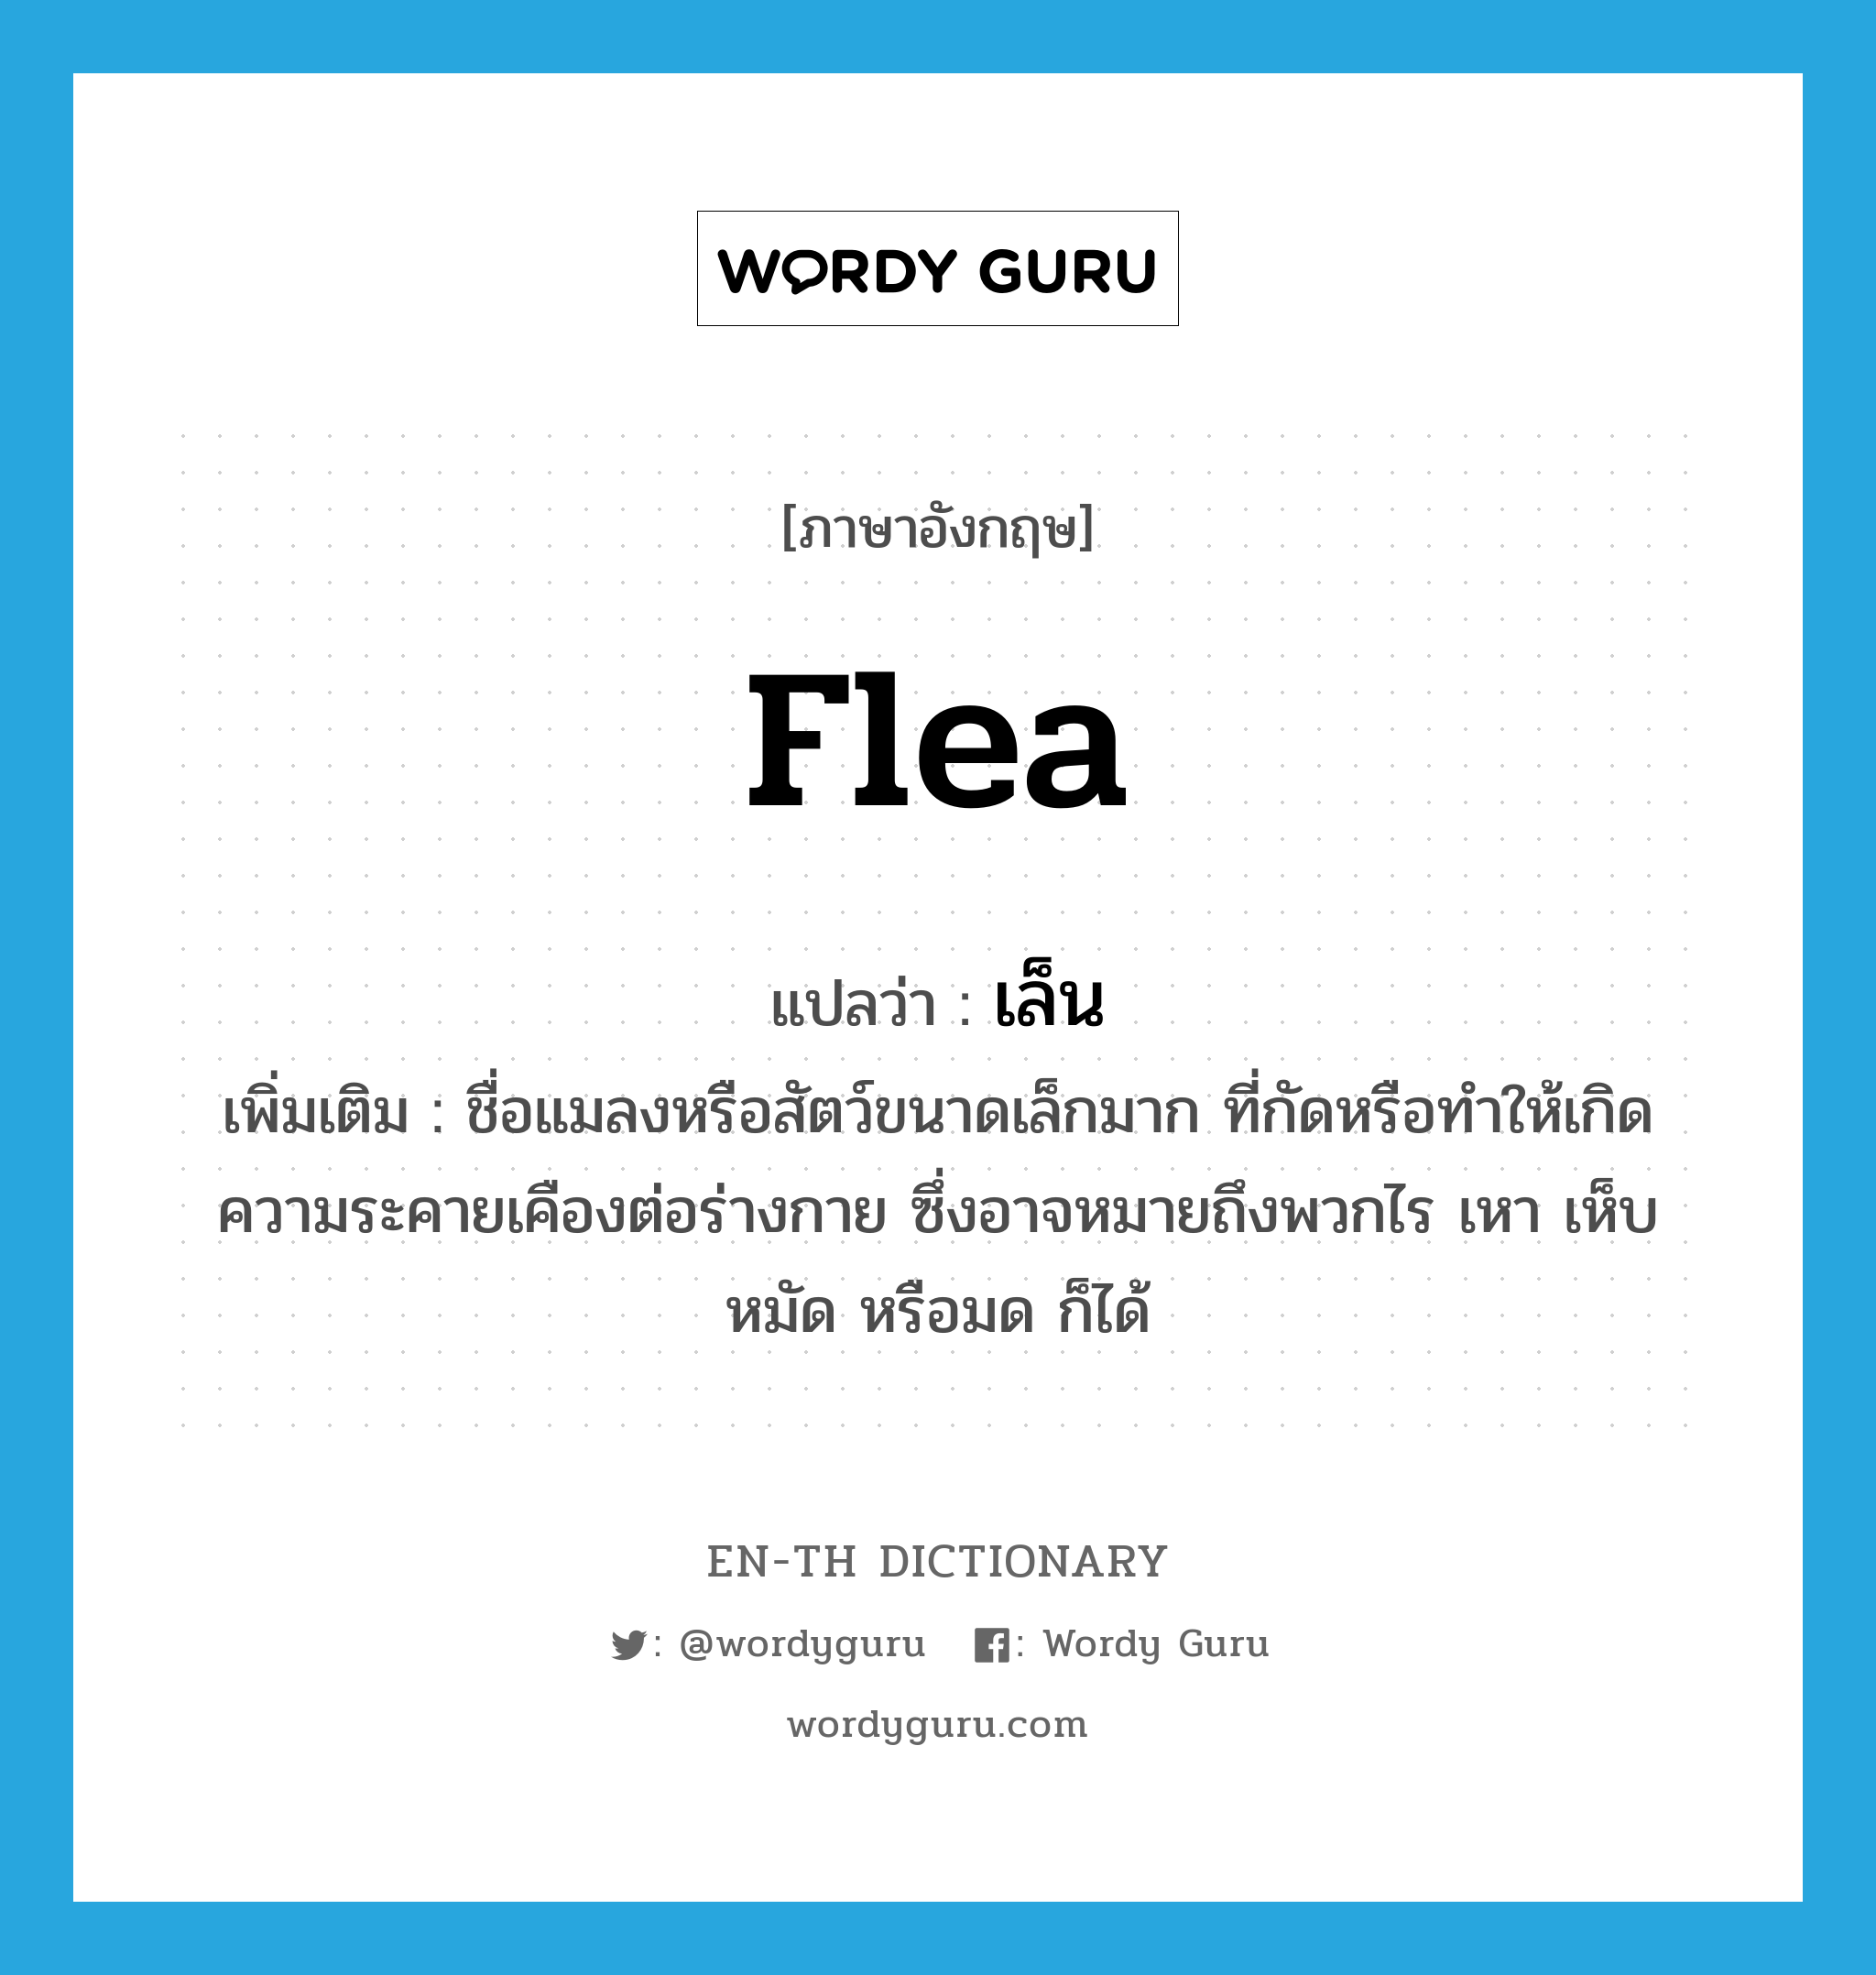 flea แปลว่า?, คำศัพท์ภาษาอังกฤษ flea แปลว่า เล็น ประเภท N เพิ่มเติม ชื่อแมลงหรือสัตว์ขนาดเล็กมาก ที่กัดหรือทำให้เกิดความระคายเคืองต่อร่างกาย ซึ่งอาจหมายถึงพวกไร เหา เห็บ หมัด หรือมด ก็ได้ หมวด N